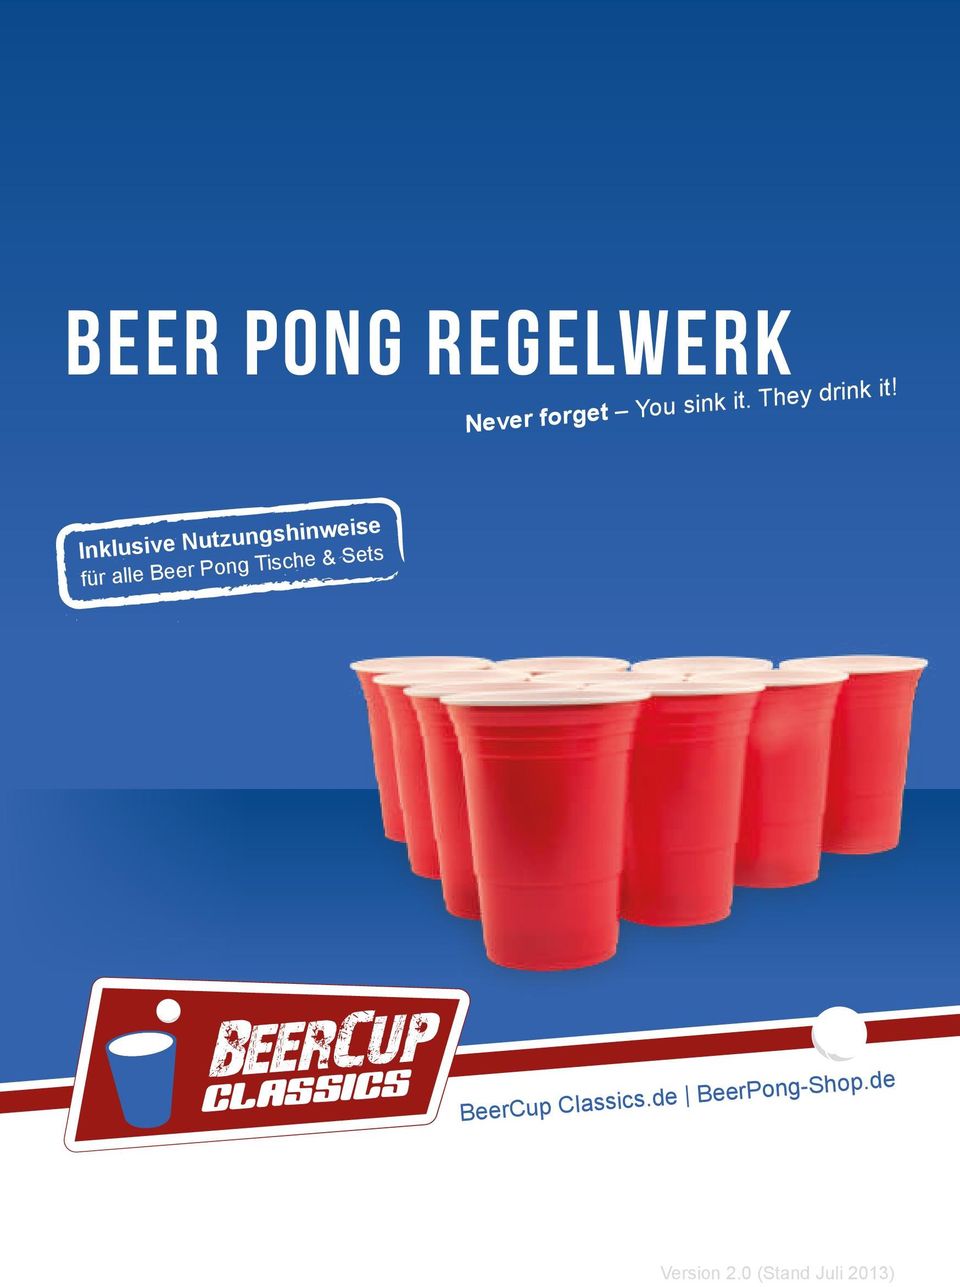 Inklusive Nutzungshinweise für alle Beer Pong